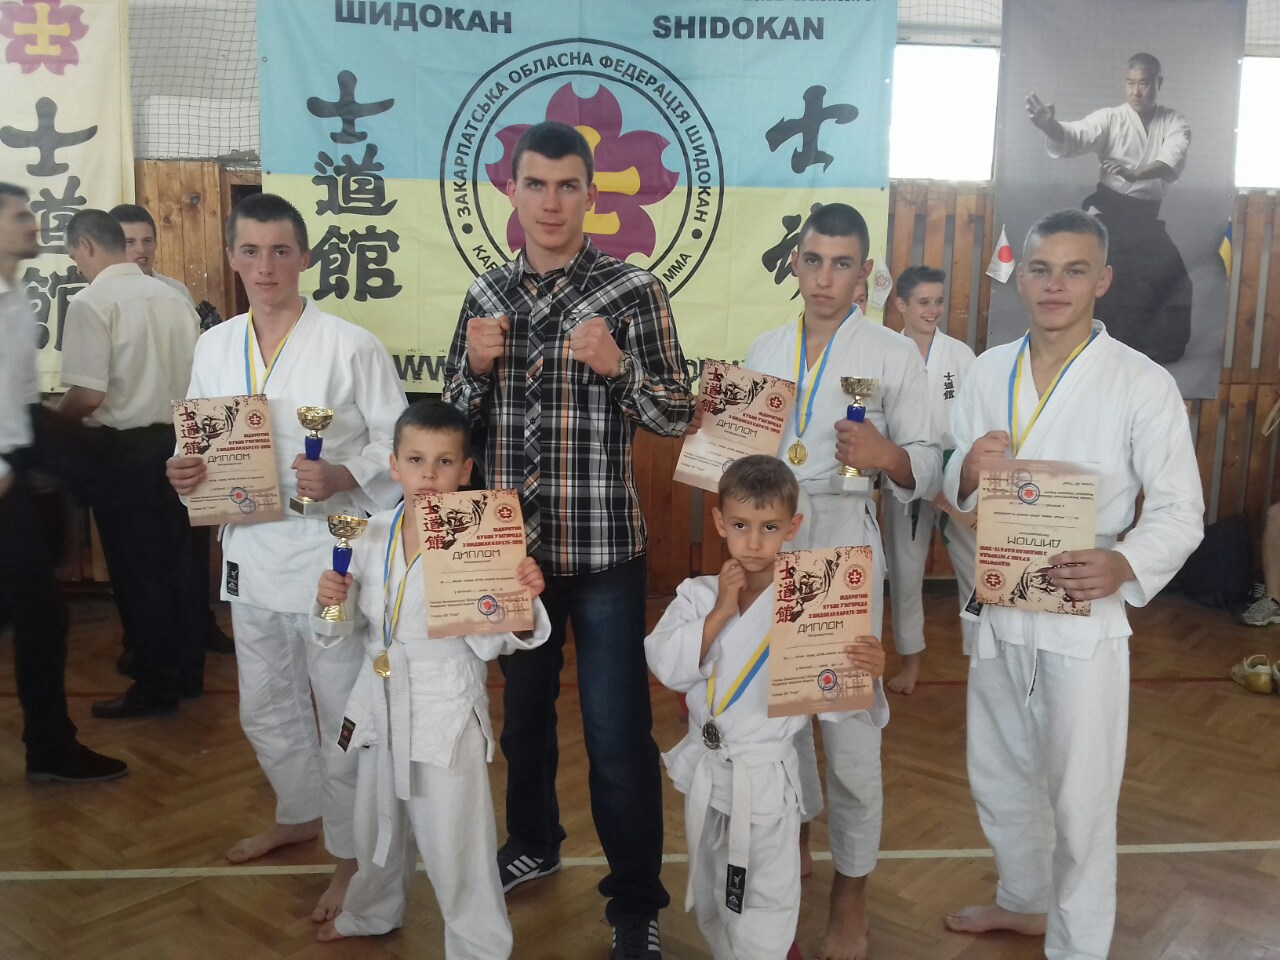 1 жовтня відбувся відкритий Кубок Ужгорода з Шидокан карате серед дітей, юнаків та дорослих. 